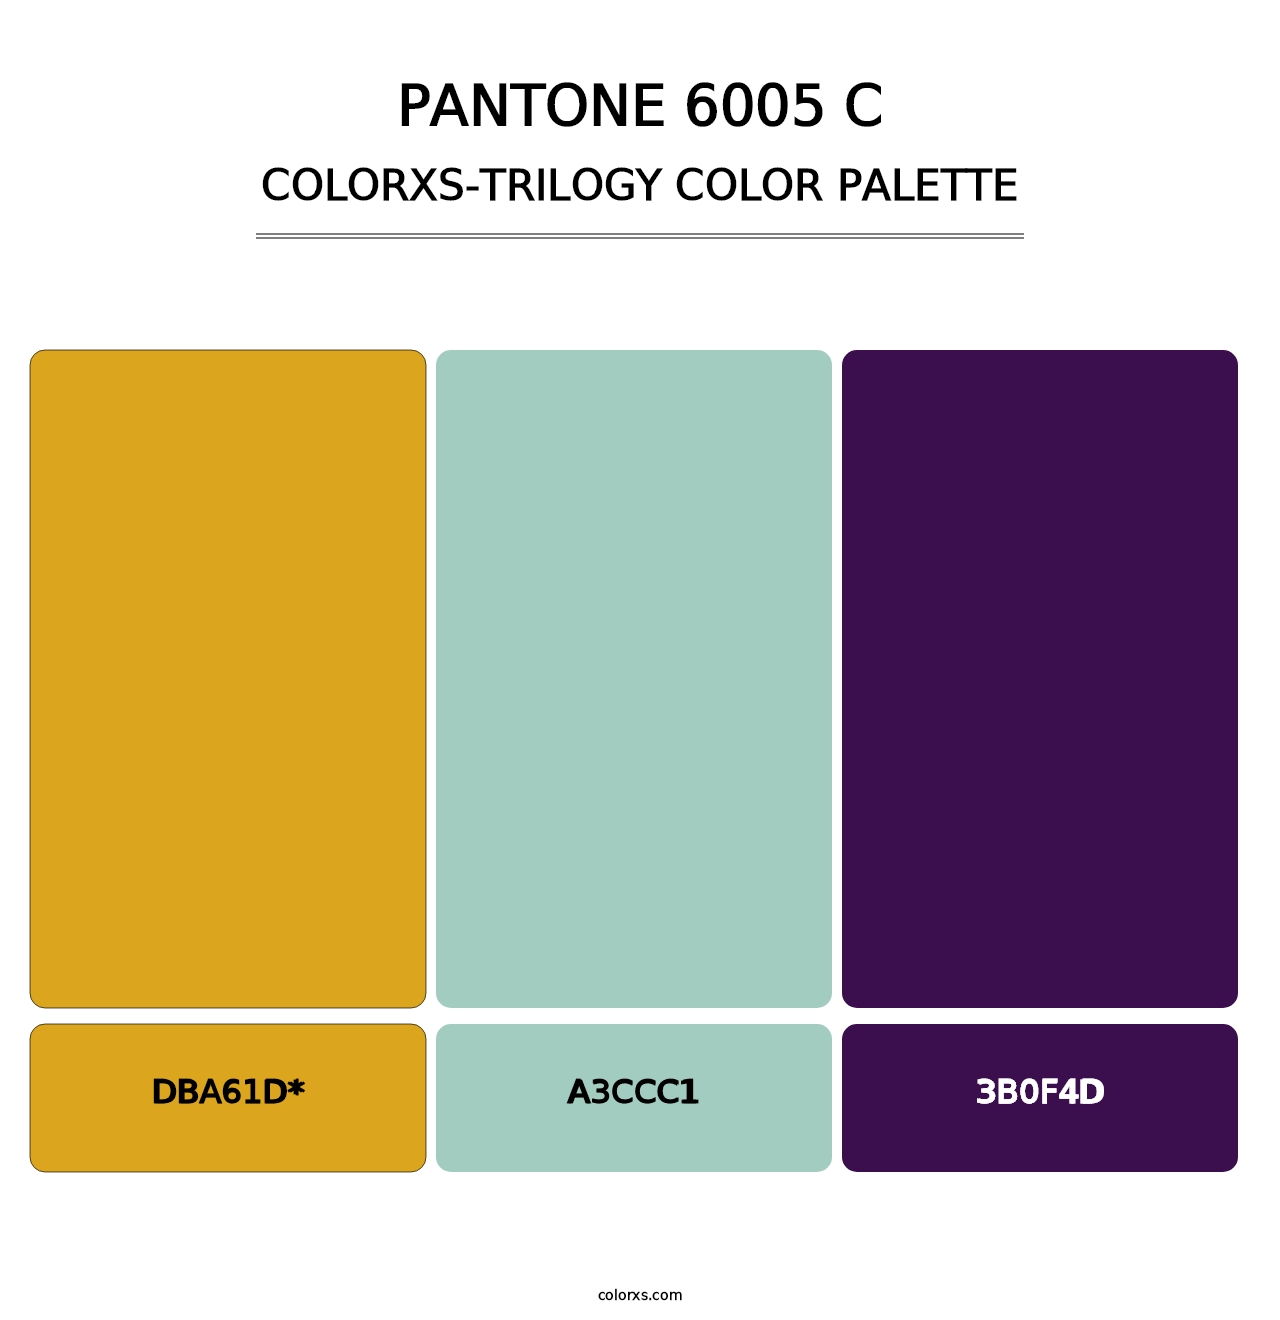 PANTONE 6005 C - Colorxs Trilogy Palette